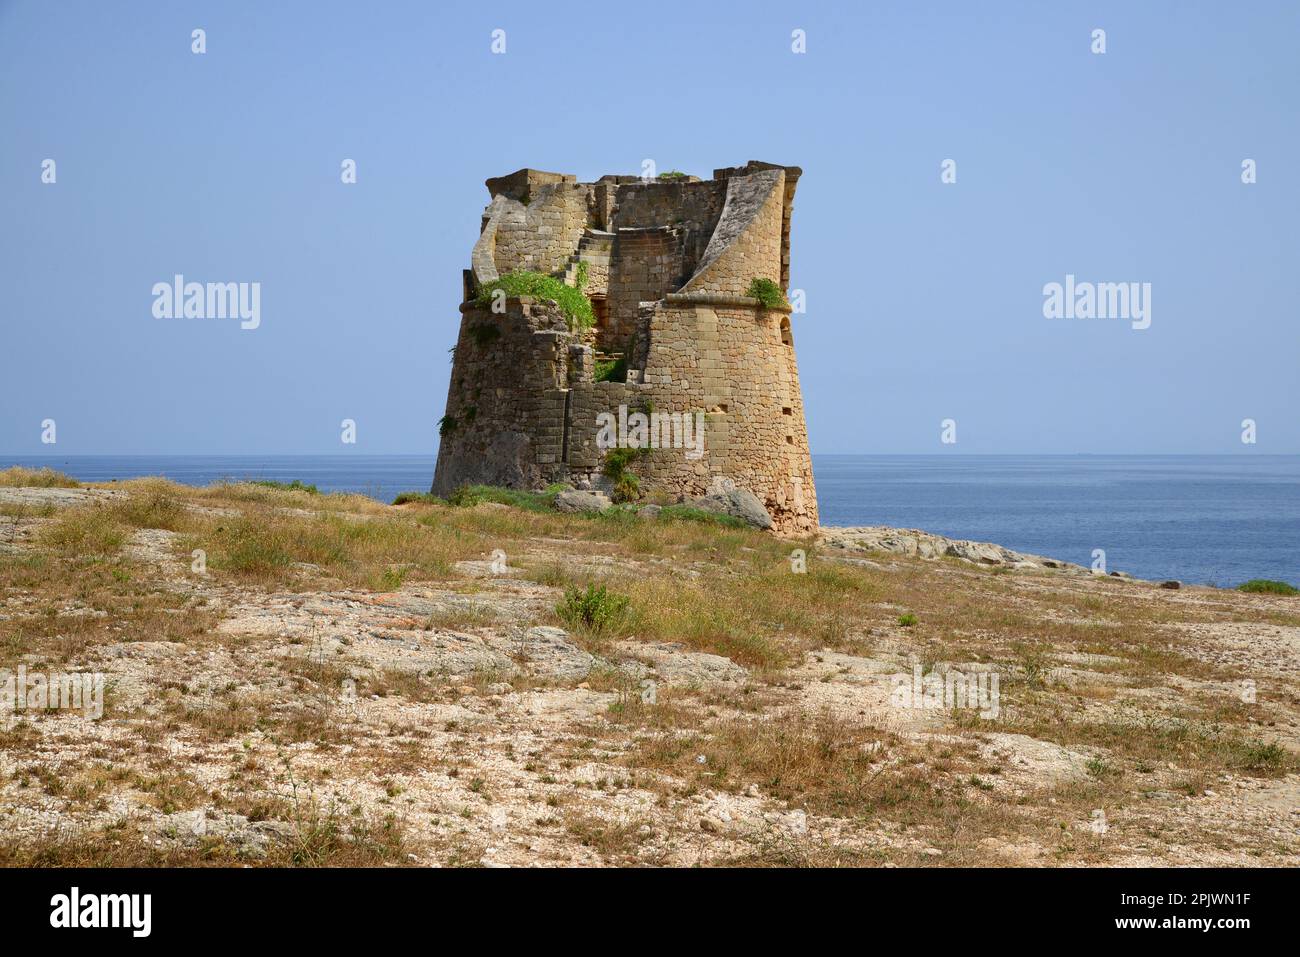 Wachturm gegen Piraten, gemeinhin als Sarazen-Turm bezeichnet, entlang der Küste von Salento zwischen Castro und Santa Cesarea Terme, Apulien, Italien, Europäisch Stockfoto